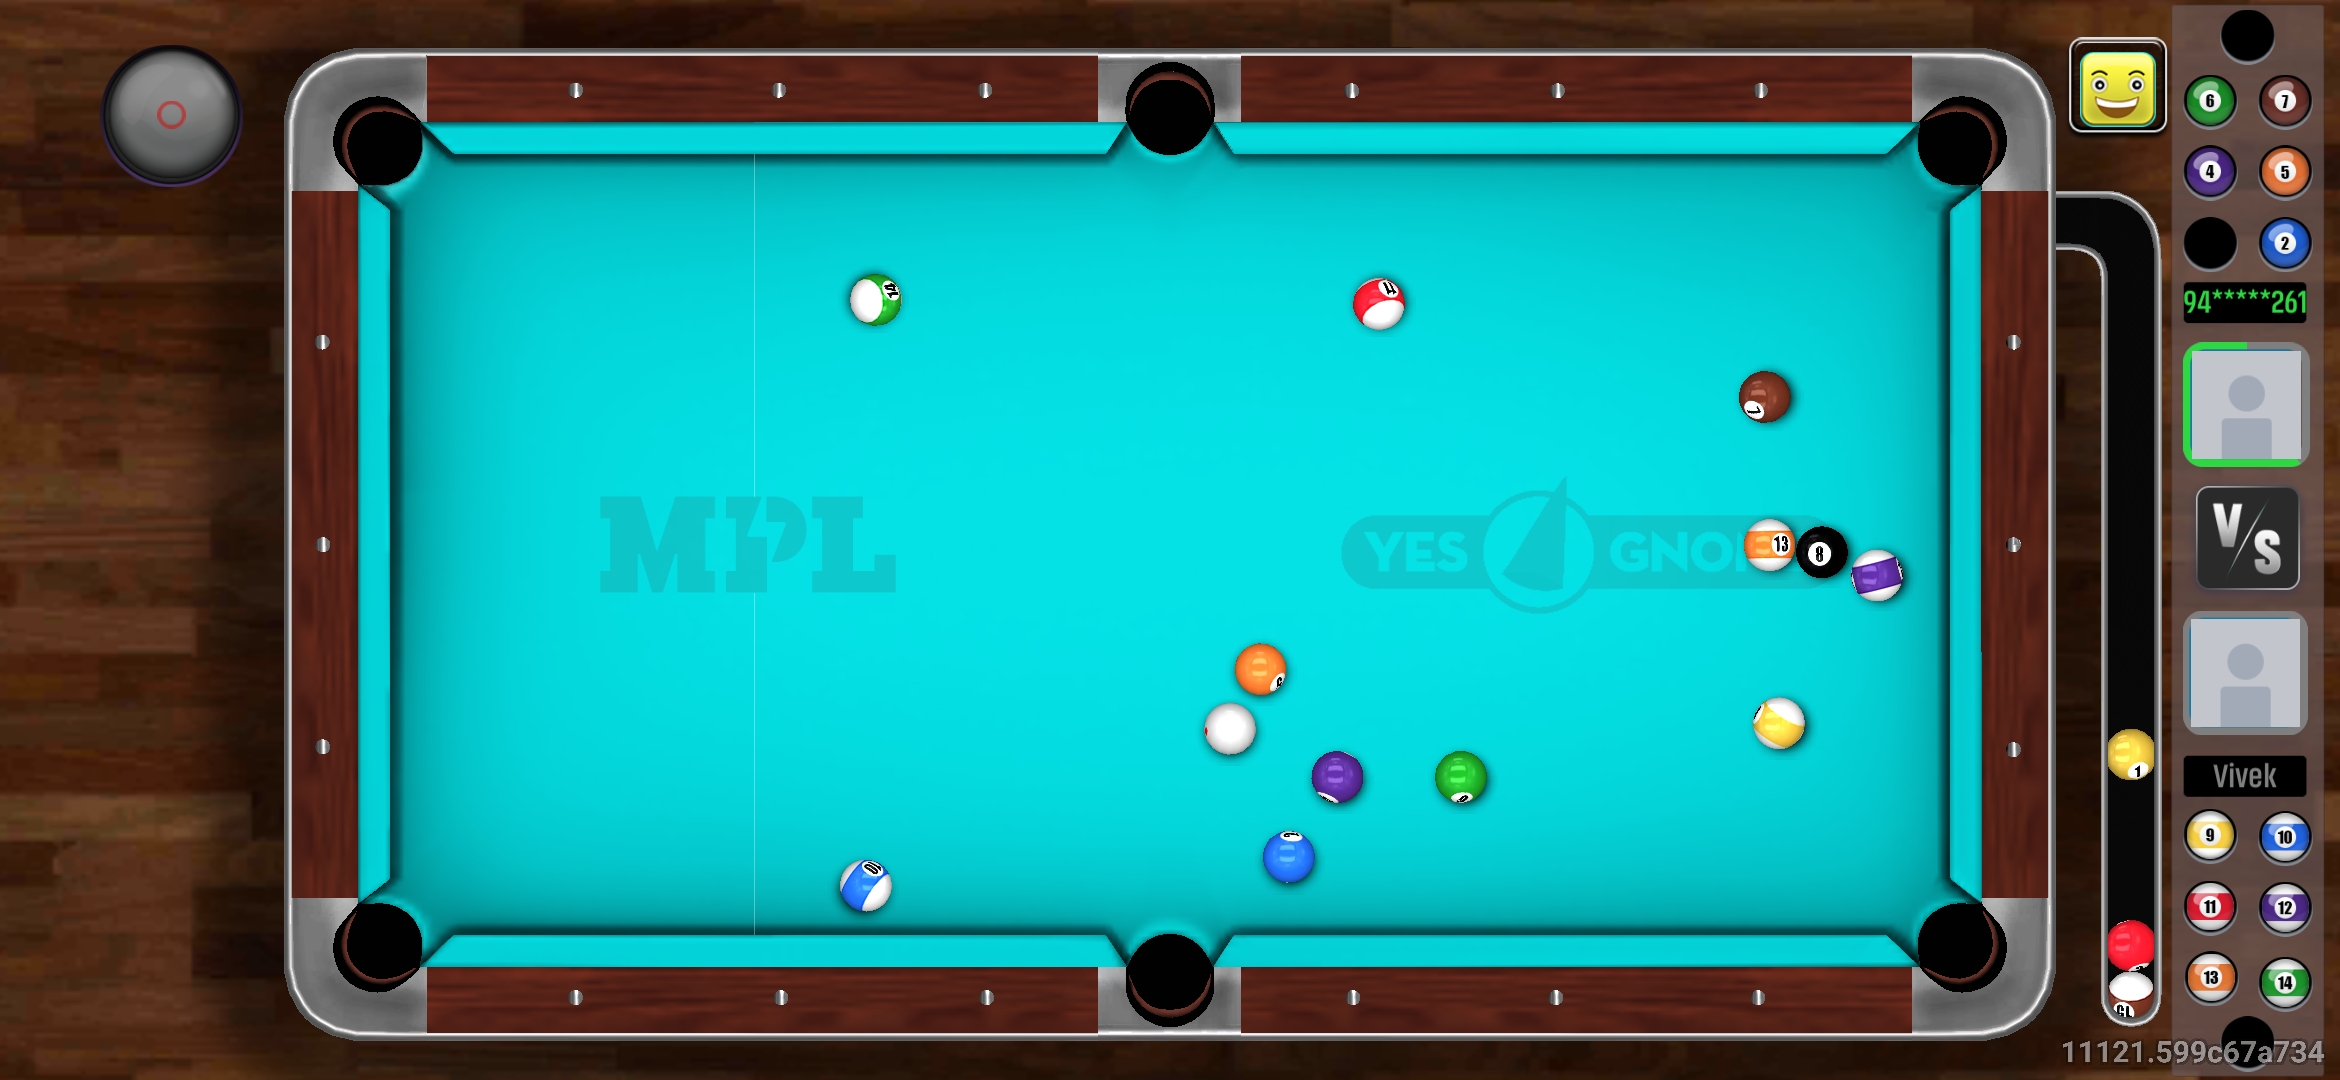 8 ball Pool